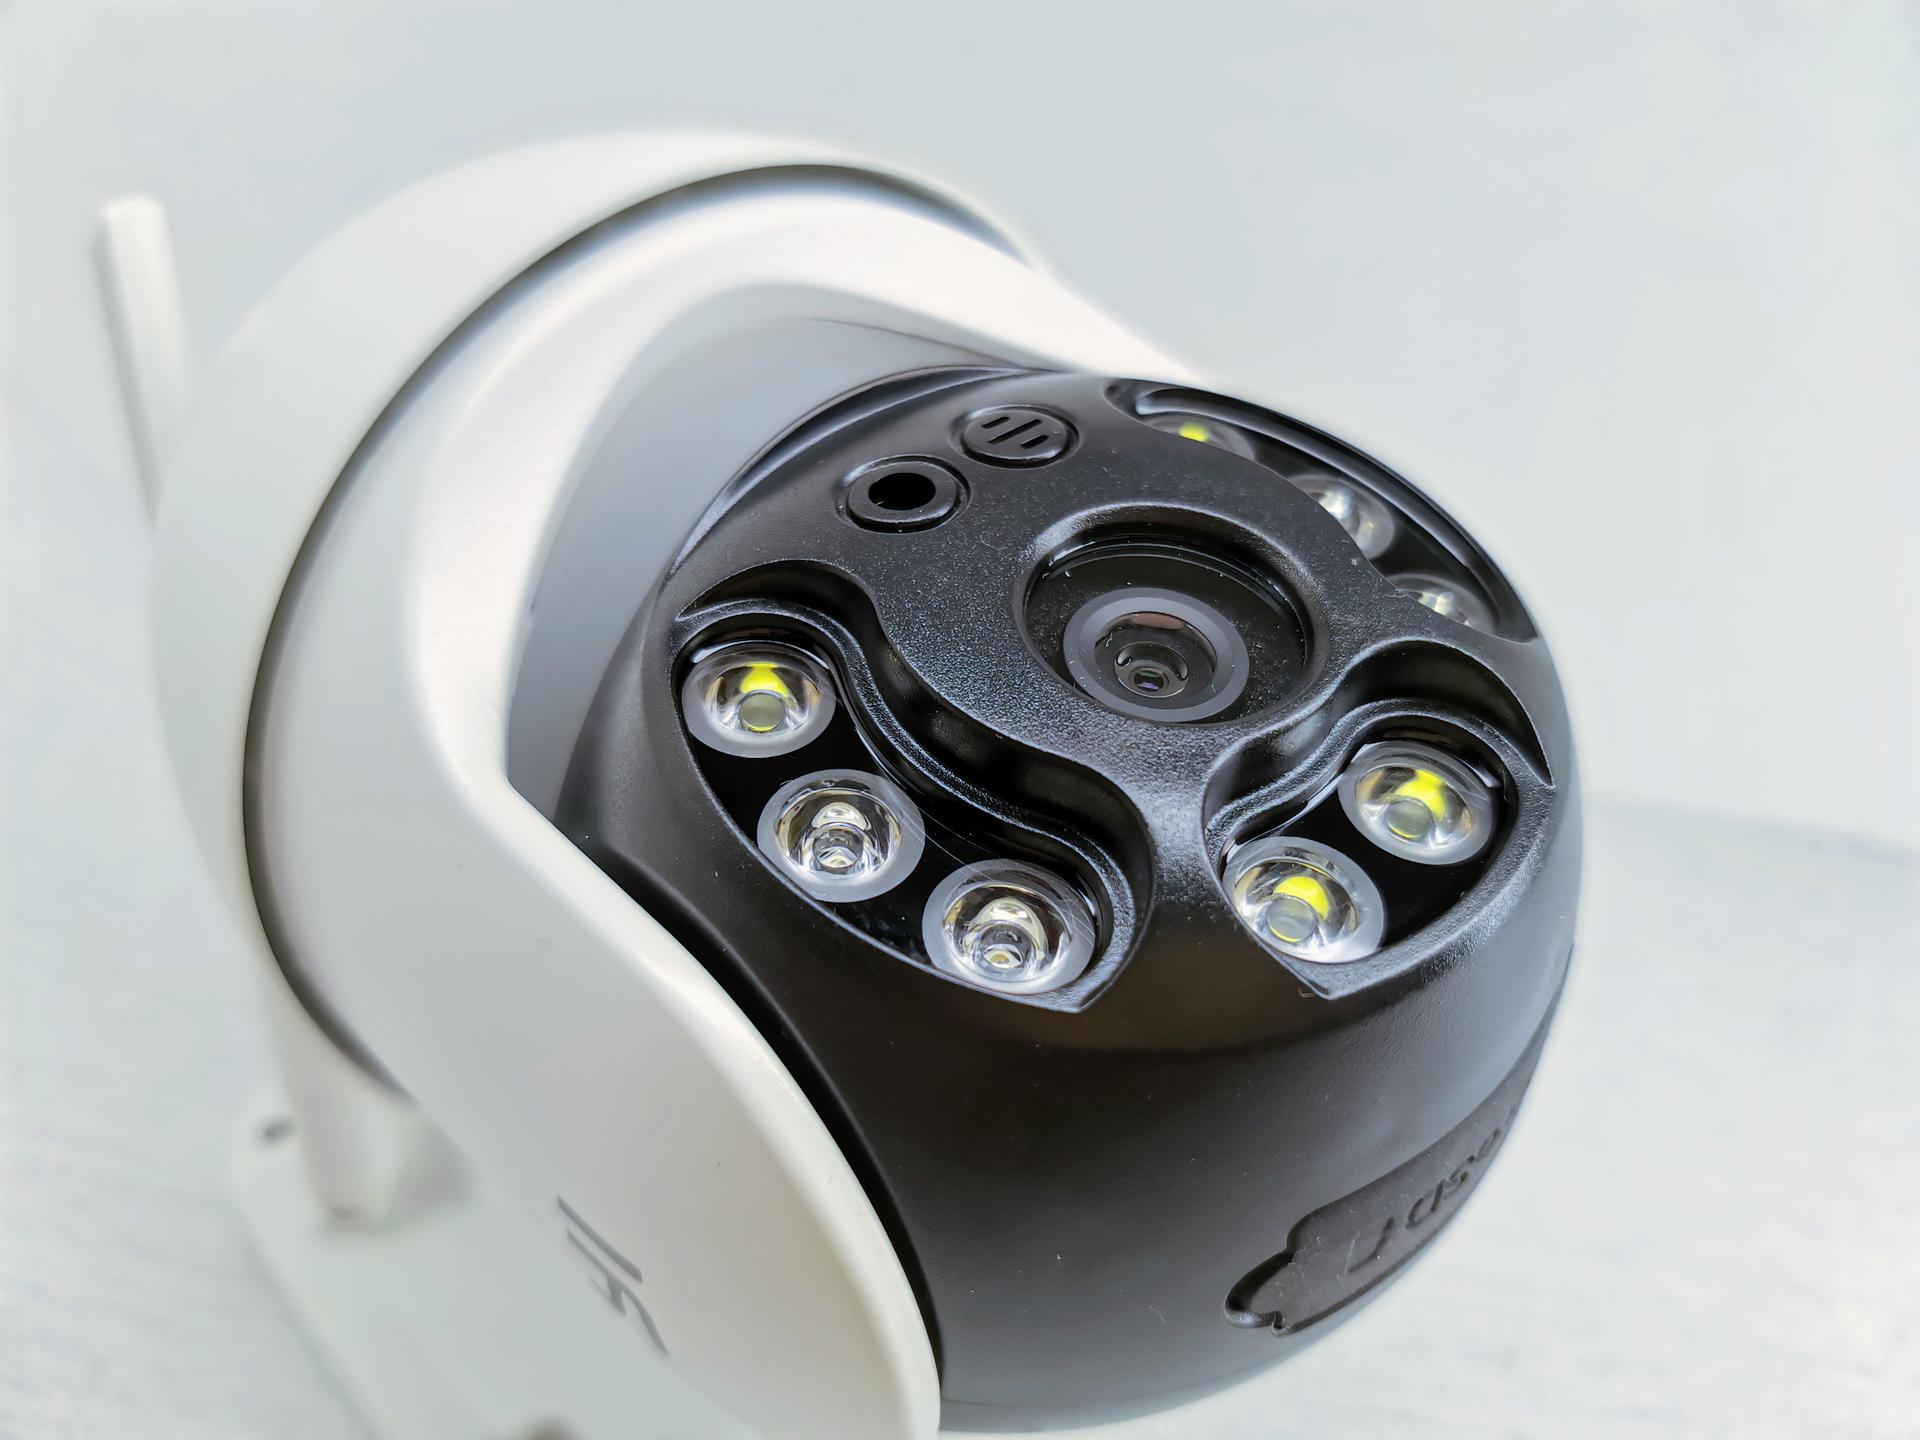 Обзор YI 1080p PTZ: современная камера наружного видеонаблюдения с ночной съемкой